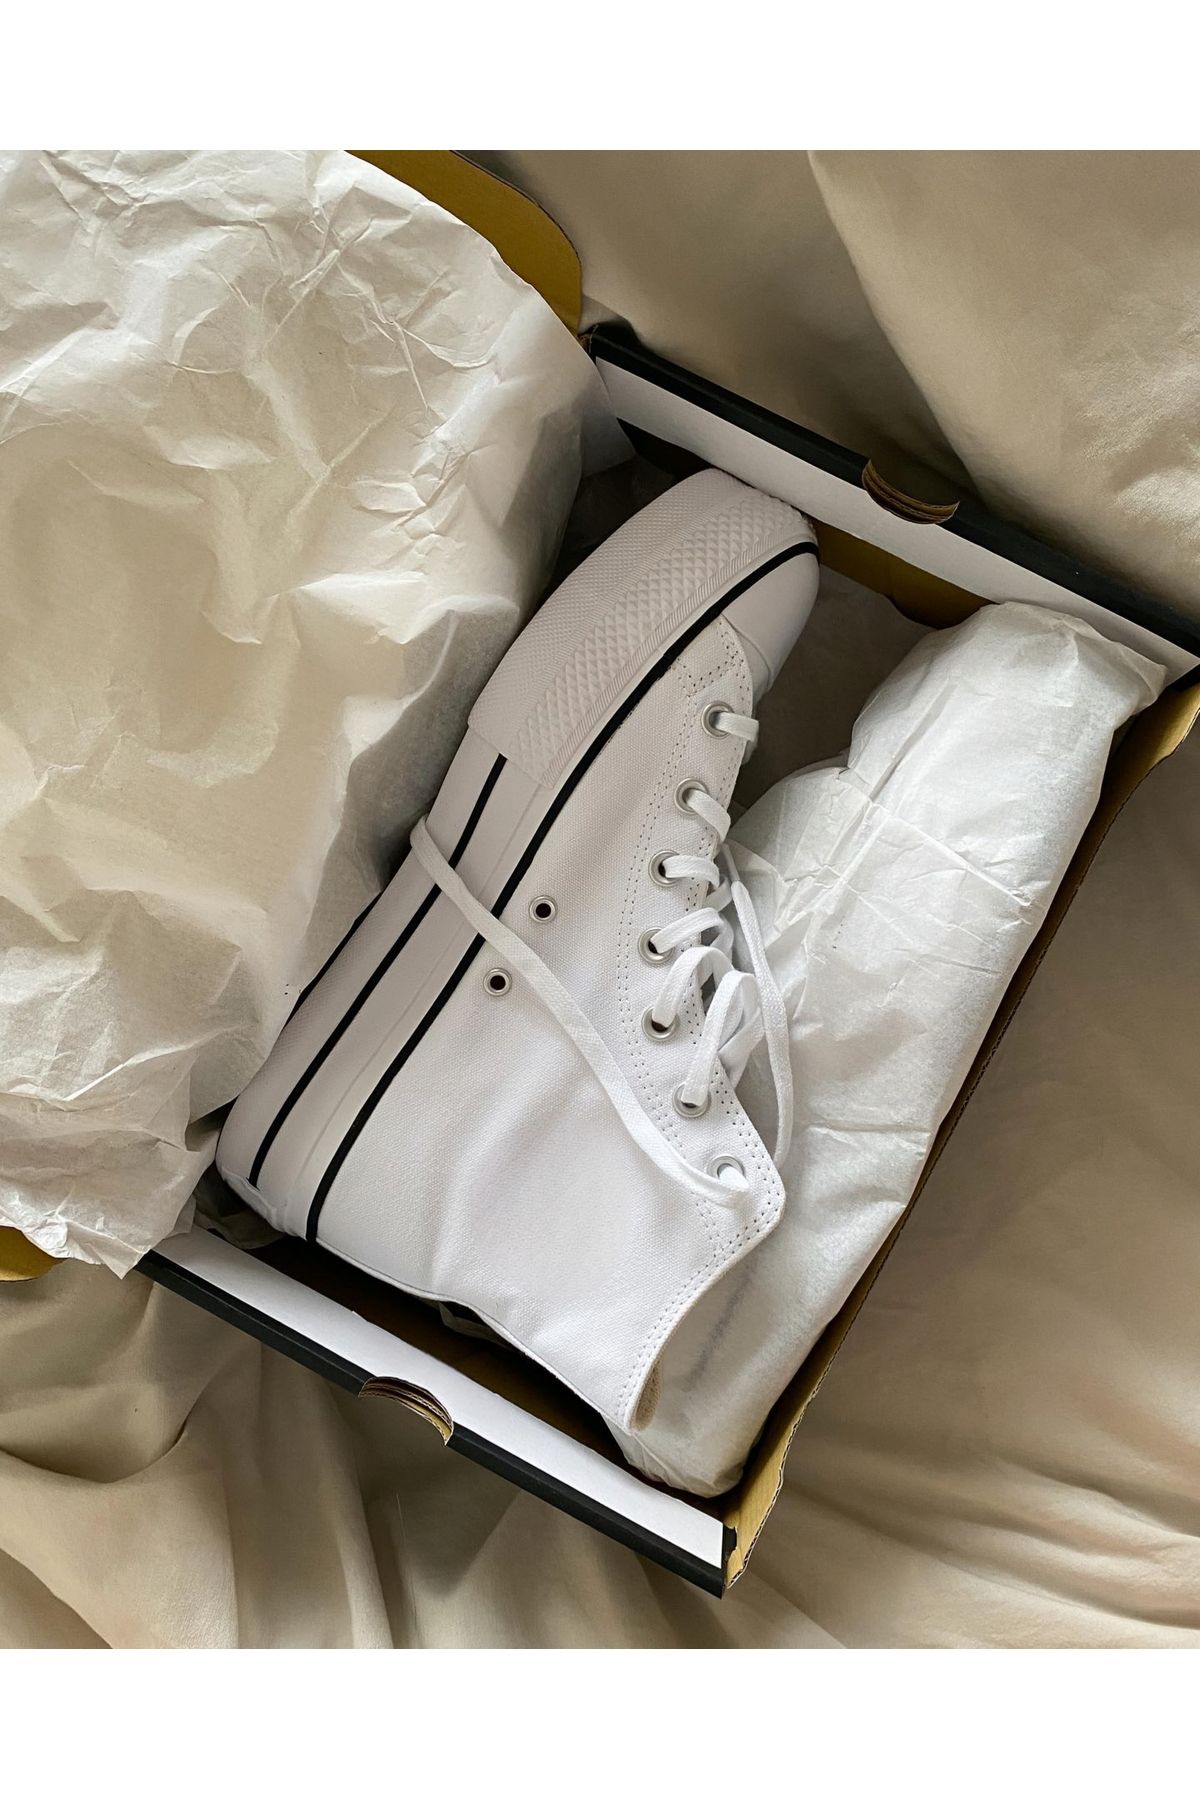 GOSSİP TEAM Beyaz Uzun Bilekli Unisex Bağcıklı Kalın Taban All Star Platform Sneaker Spor Ayakkabı